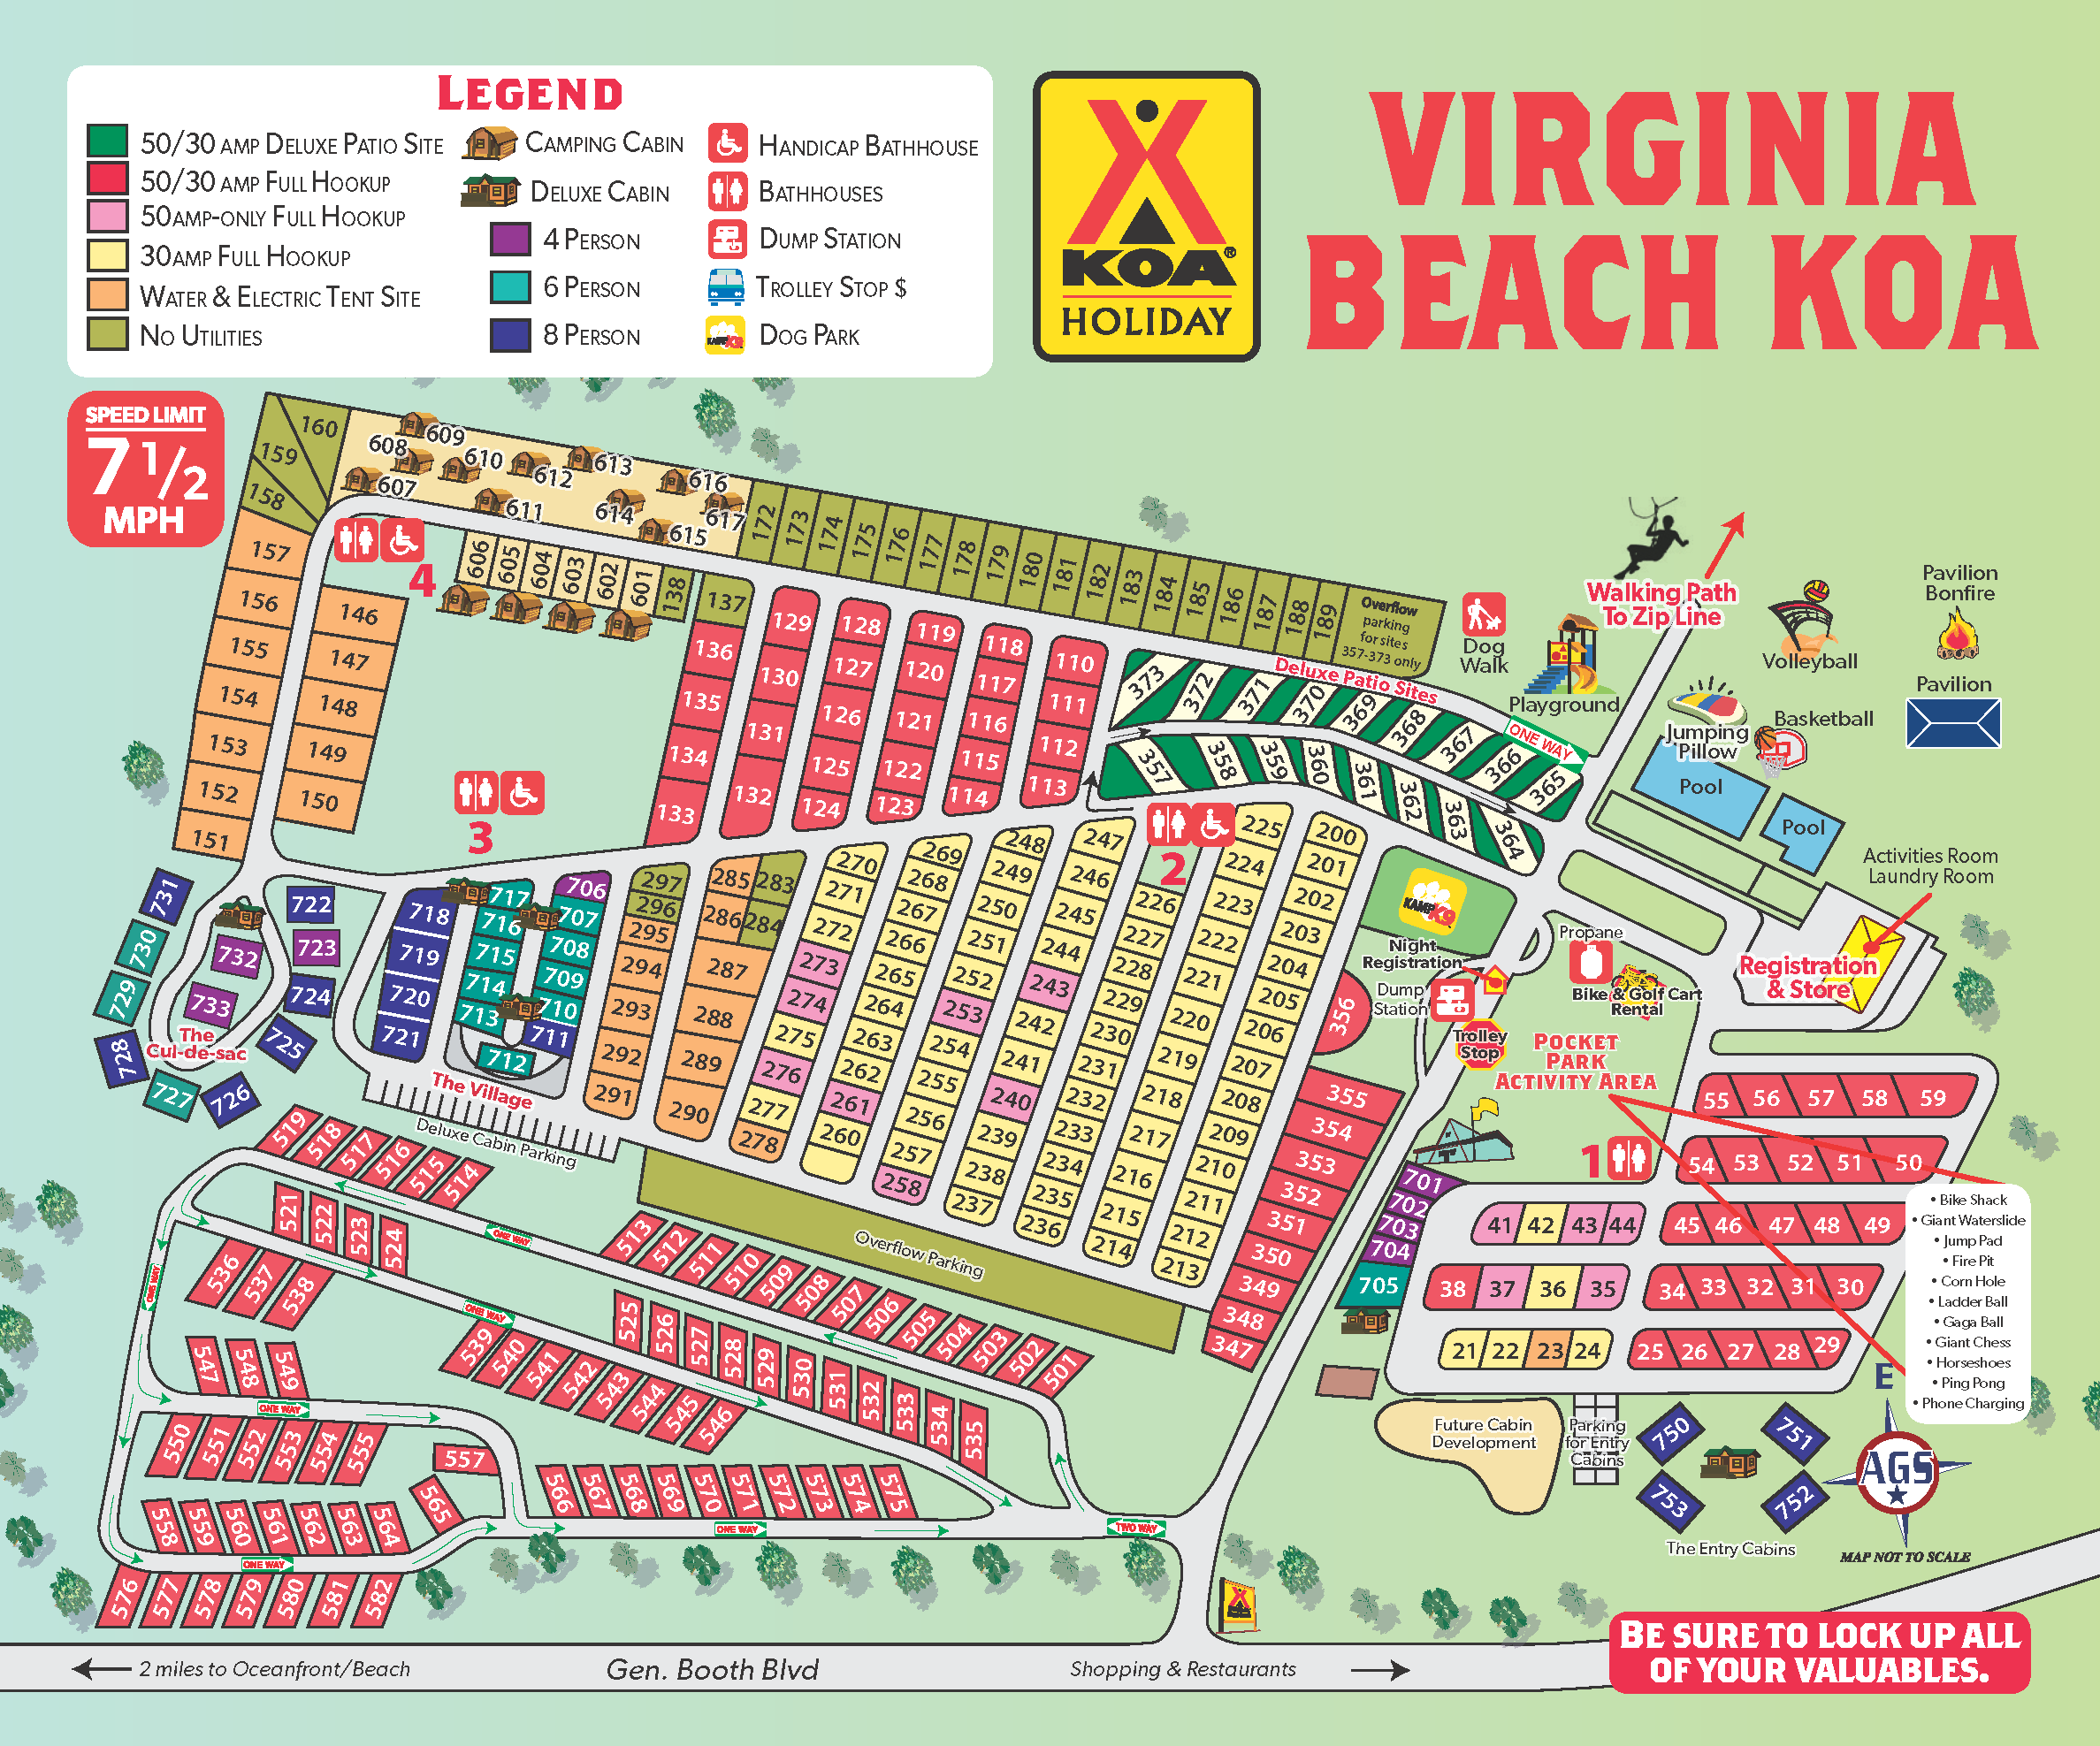 Virginia Beach Virginia Campground Map Virginia Beach Koa Holiday